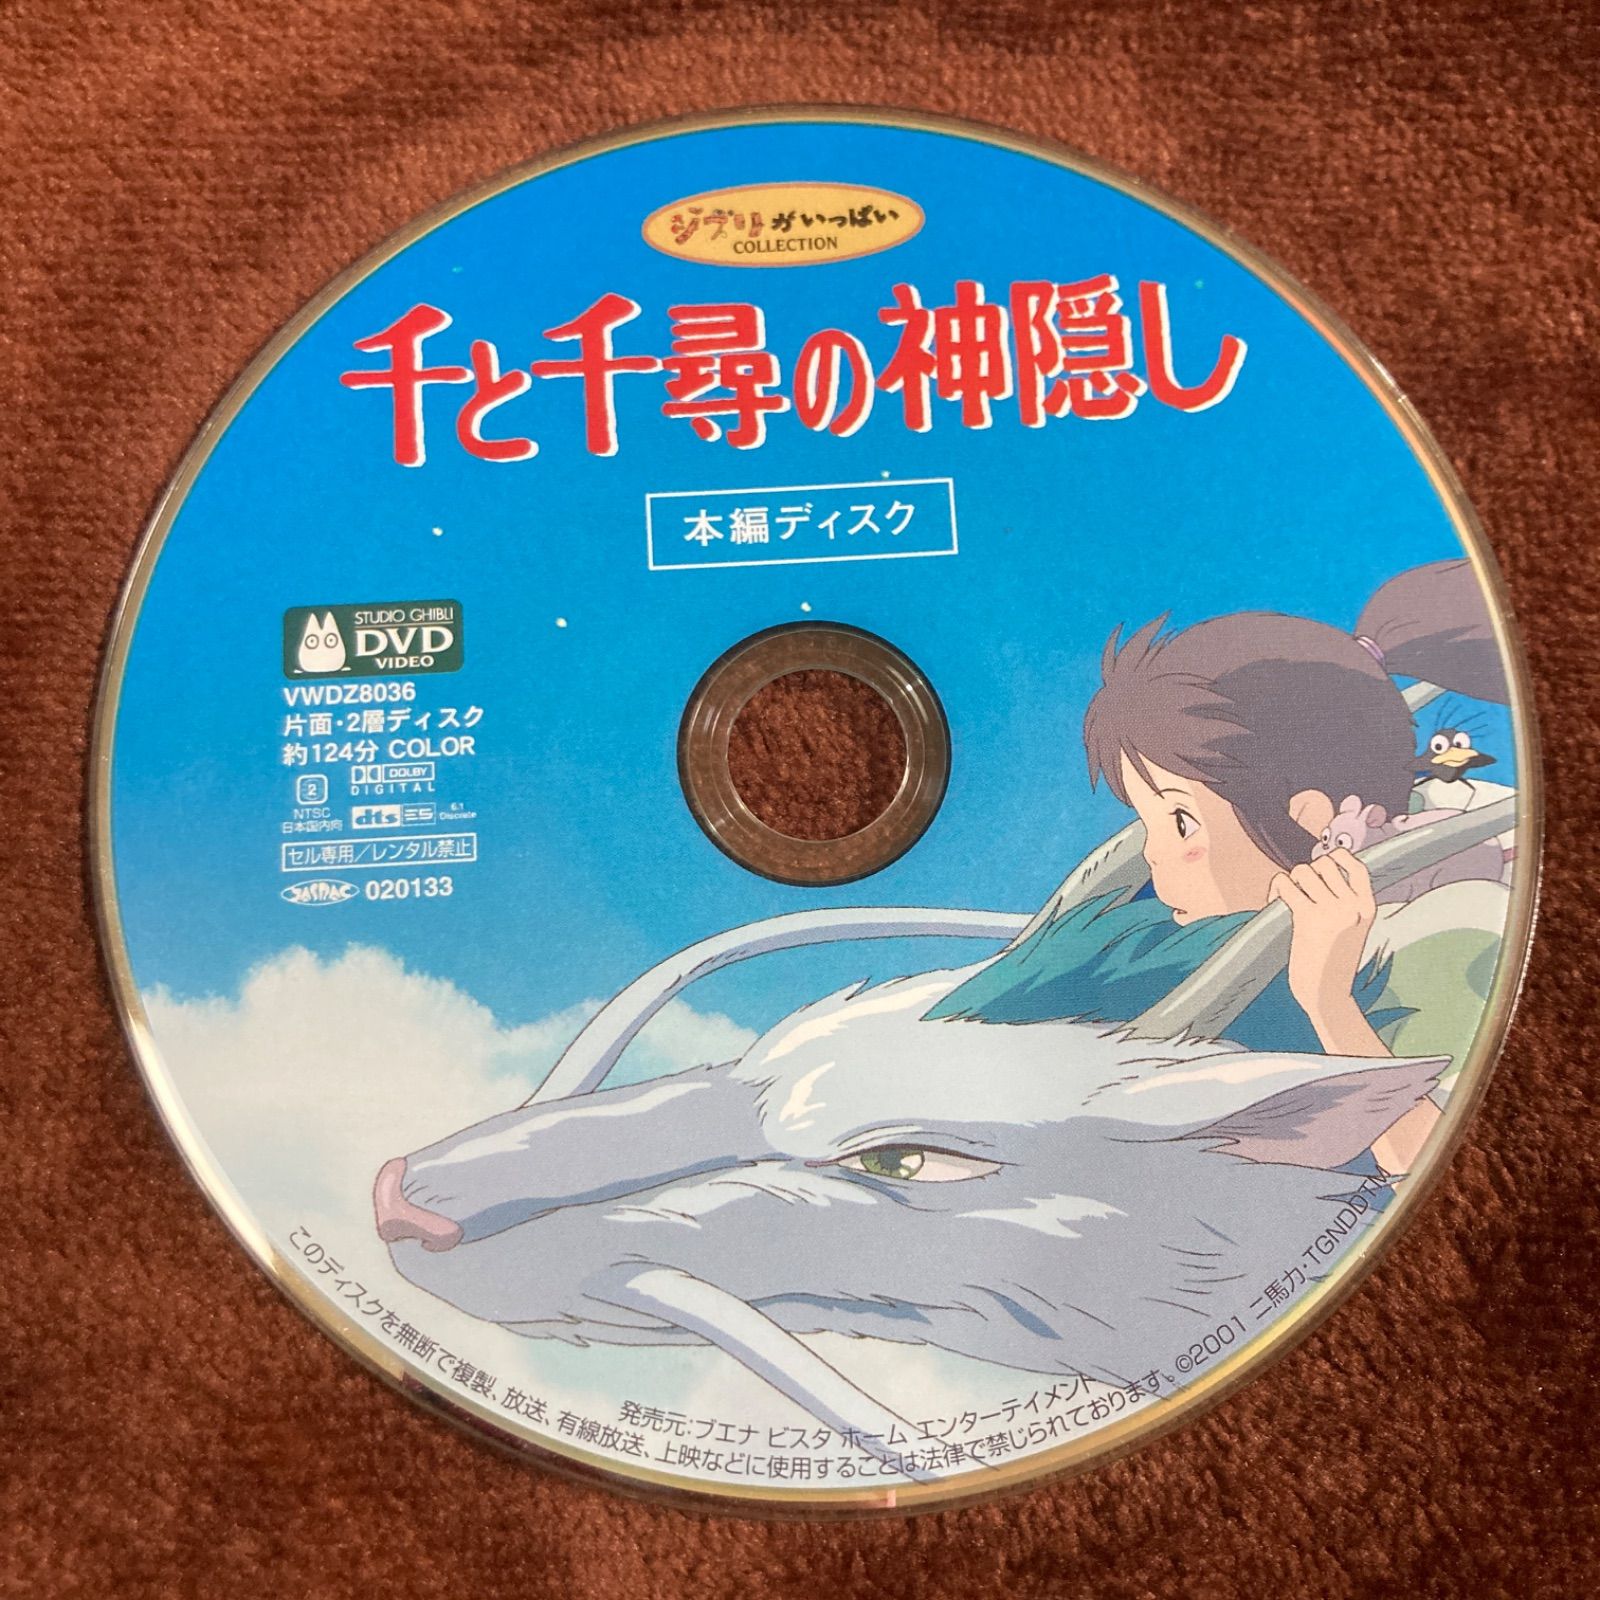 千と千尋の神隠し』DVD( 本編DVD) - 邦画・日本映画